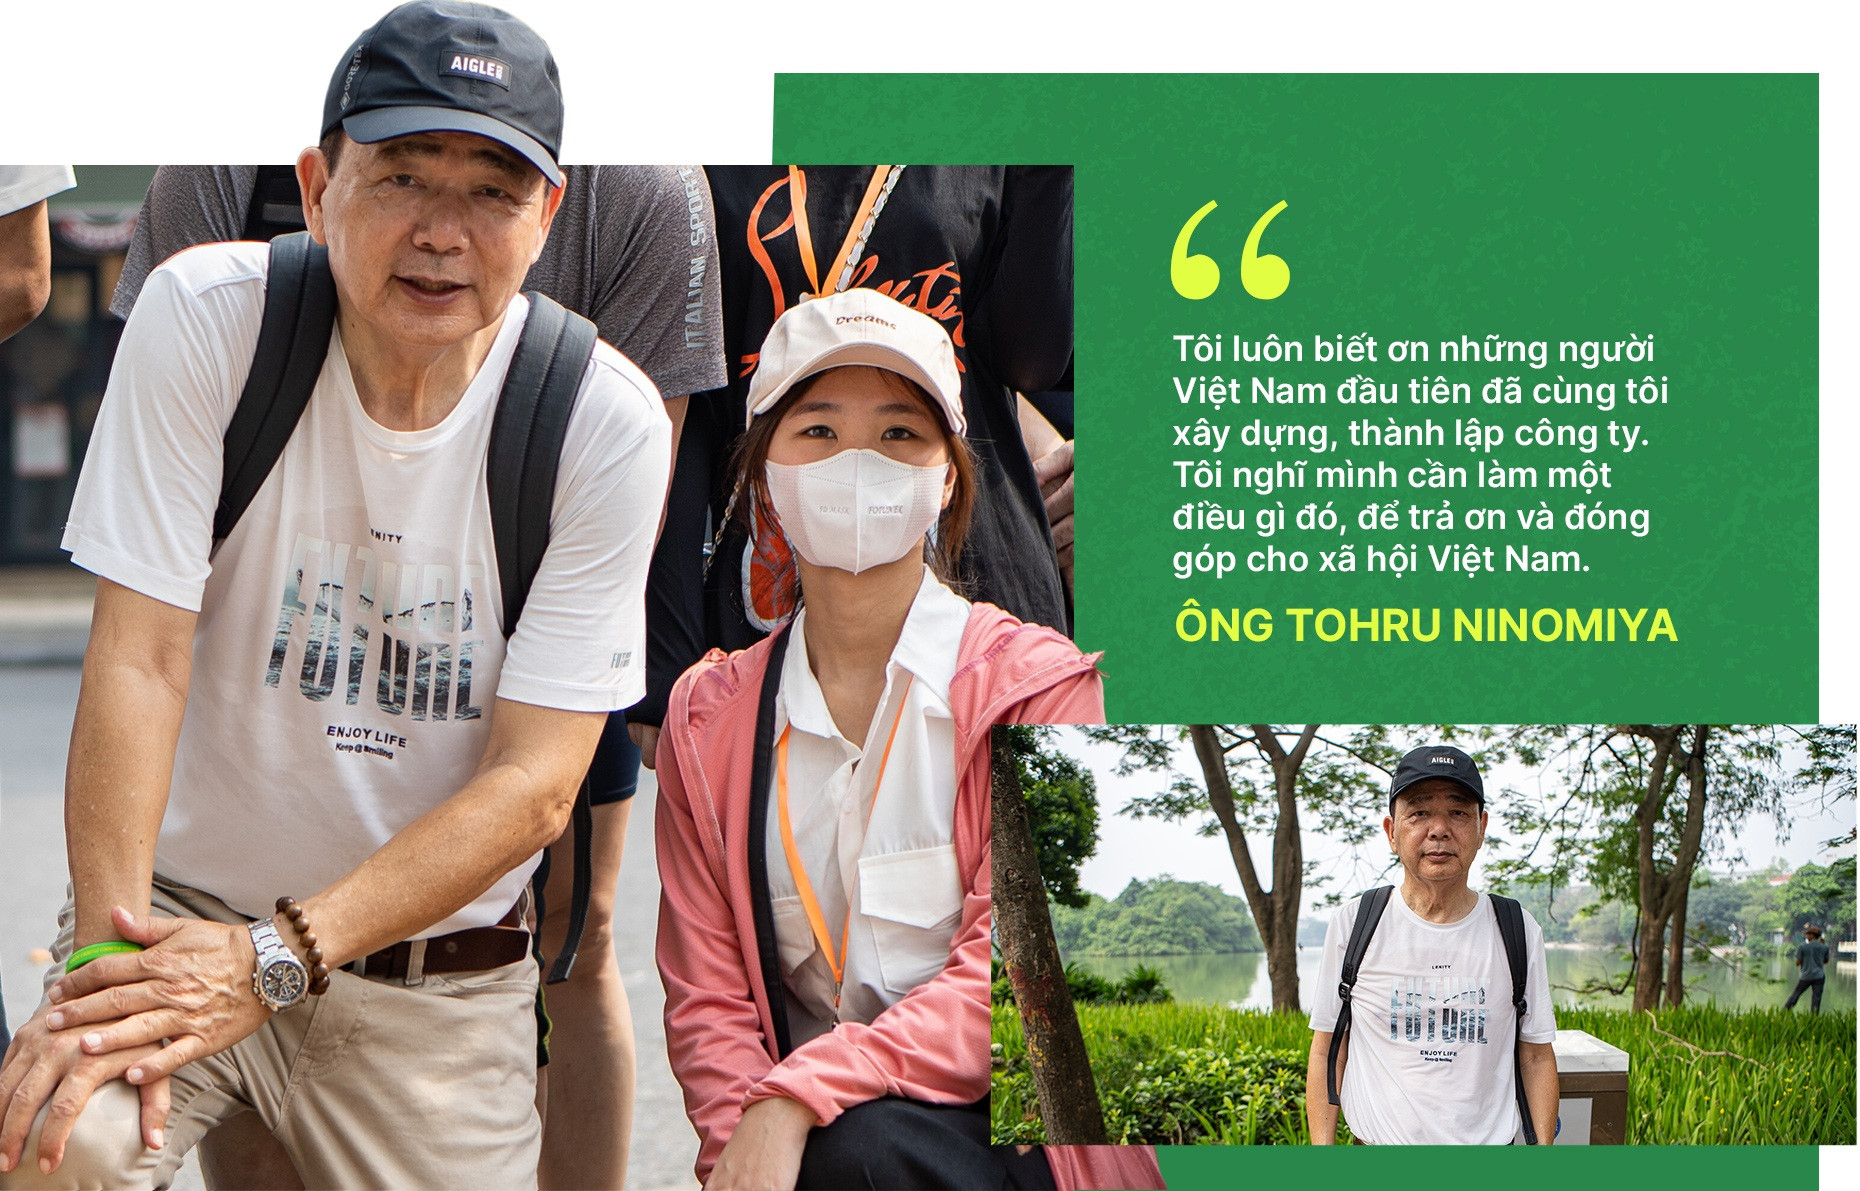 Doanh nhân Nhật Bản hơn 10 năm nhặt rác hồ Gươm để trả ơn Việt Nam - 5